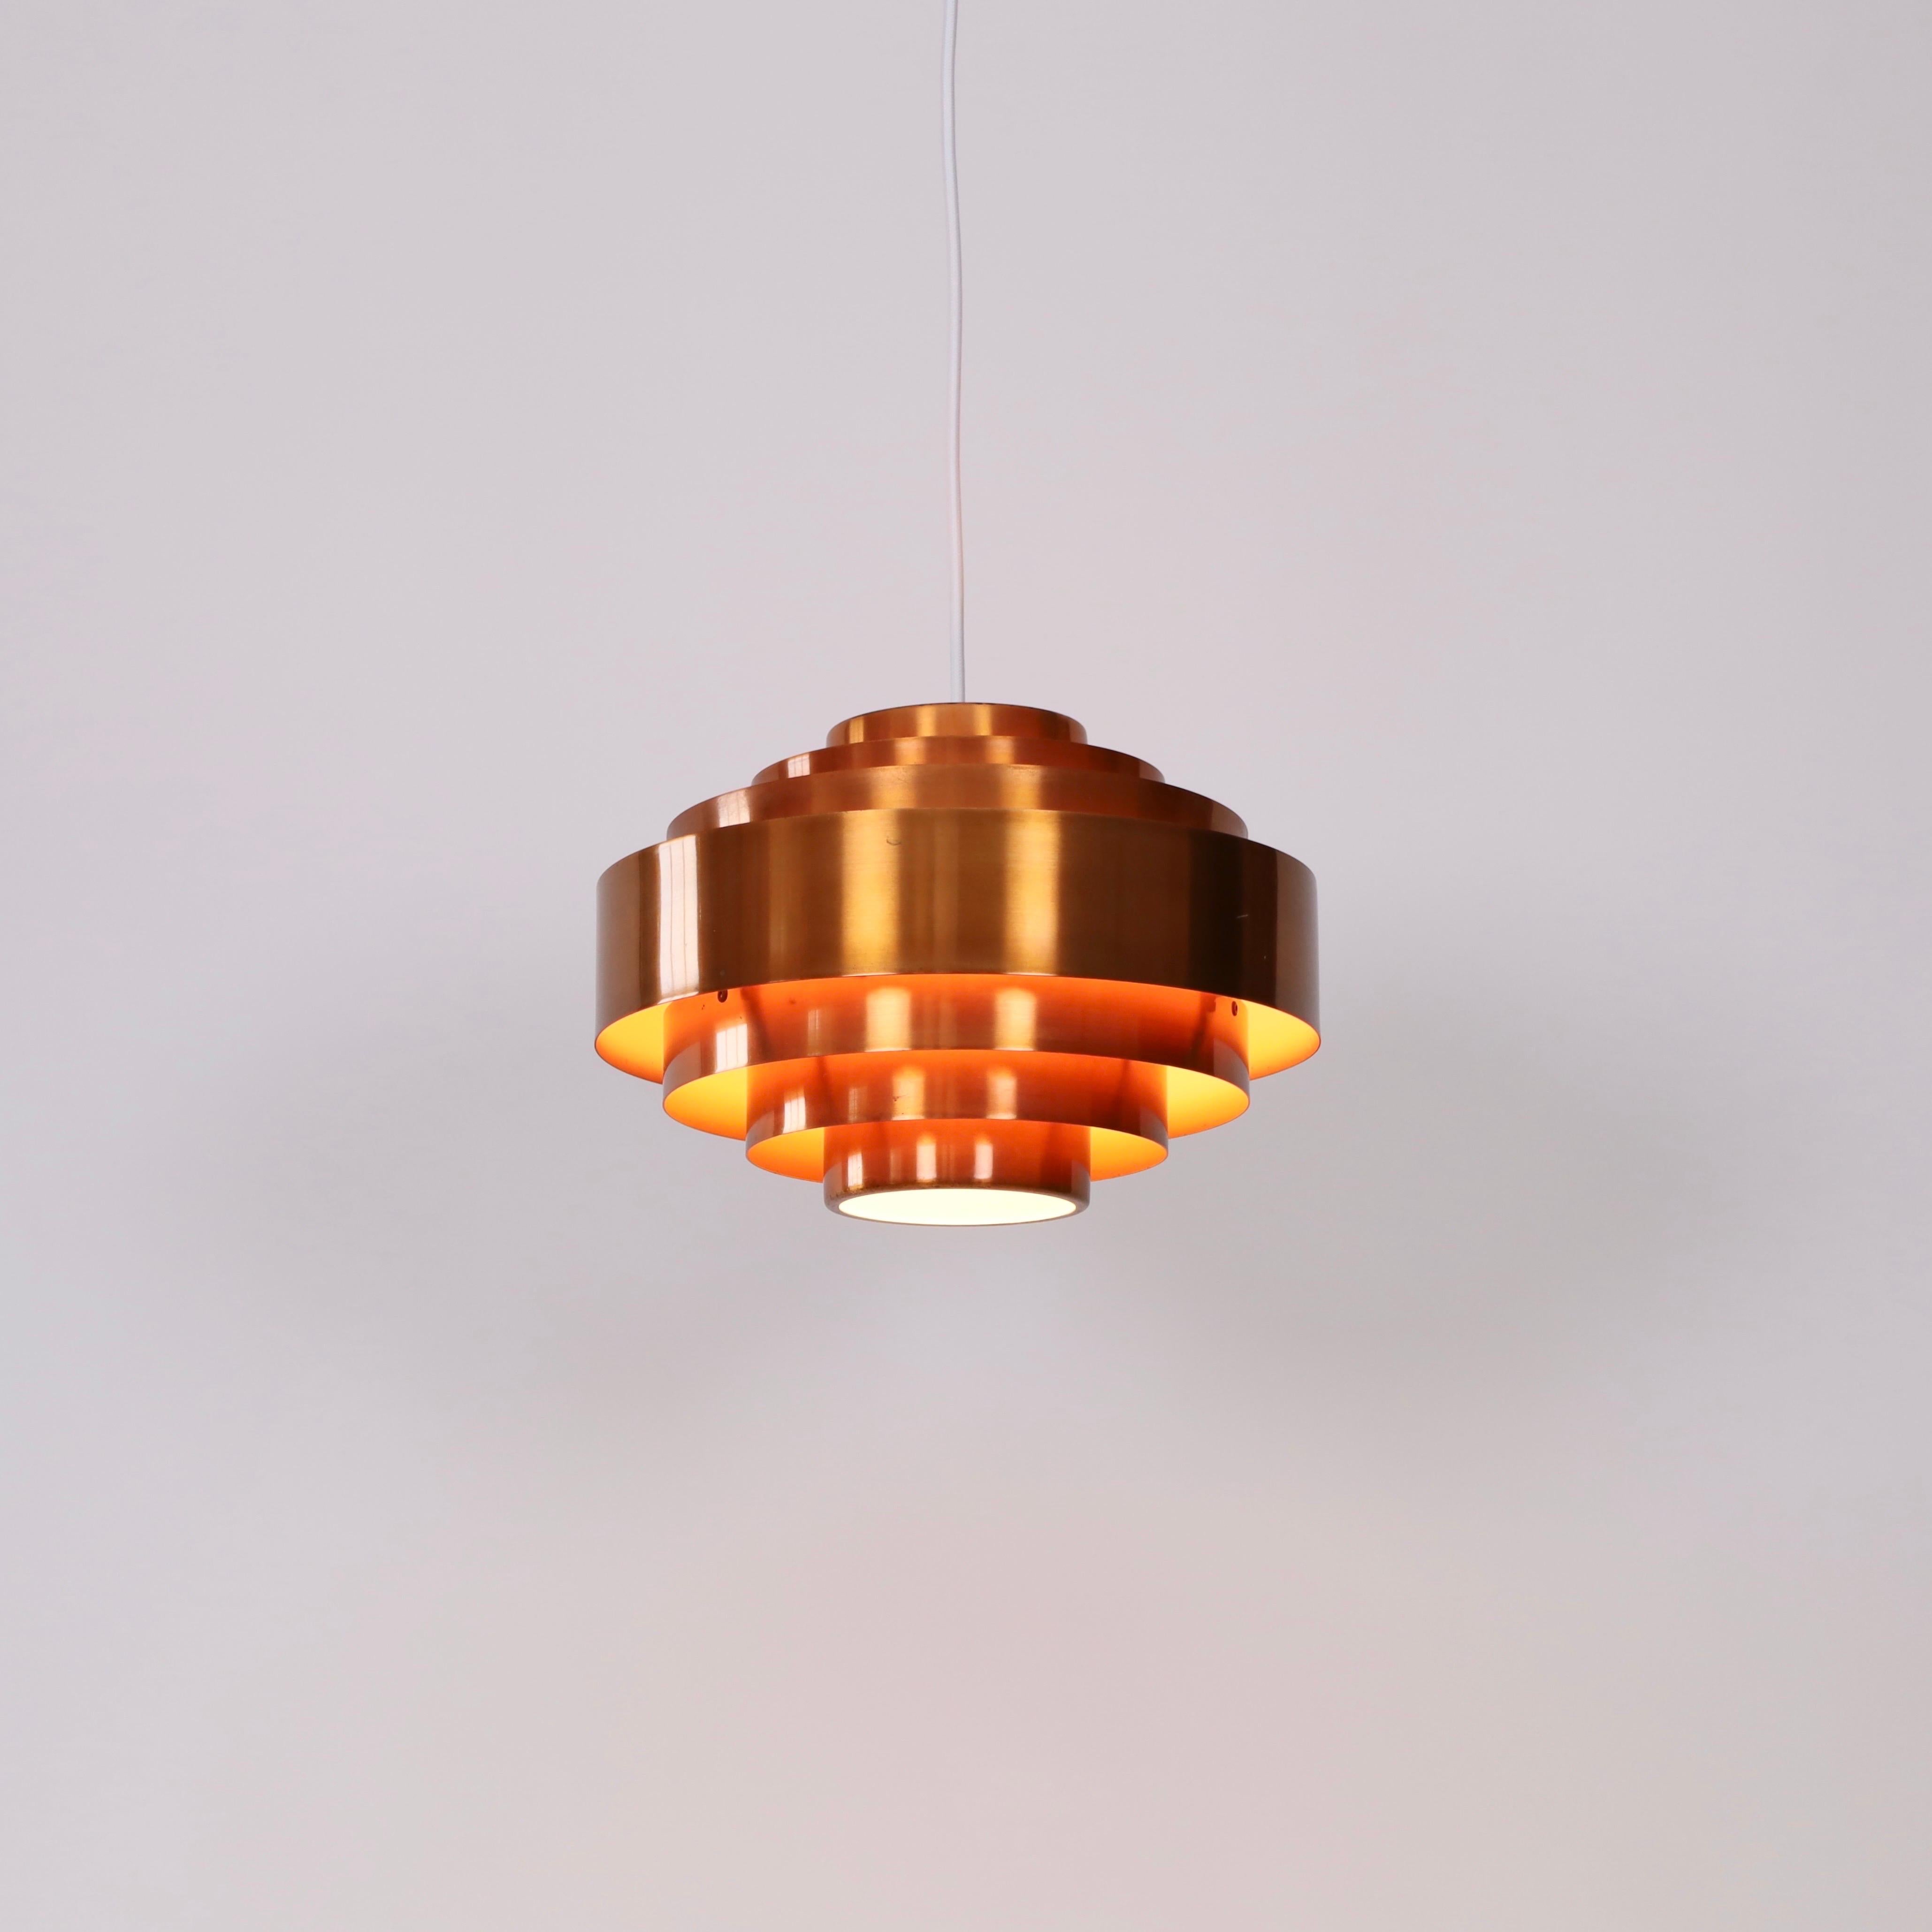 Mid-20th Century Copper Pendant Light by Jo Hammerborg for Fog & Morup, 1960s, Denmark For Sale